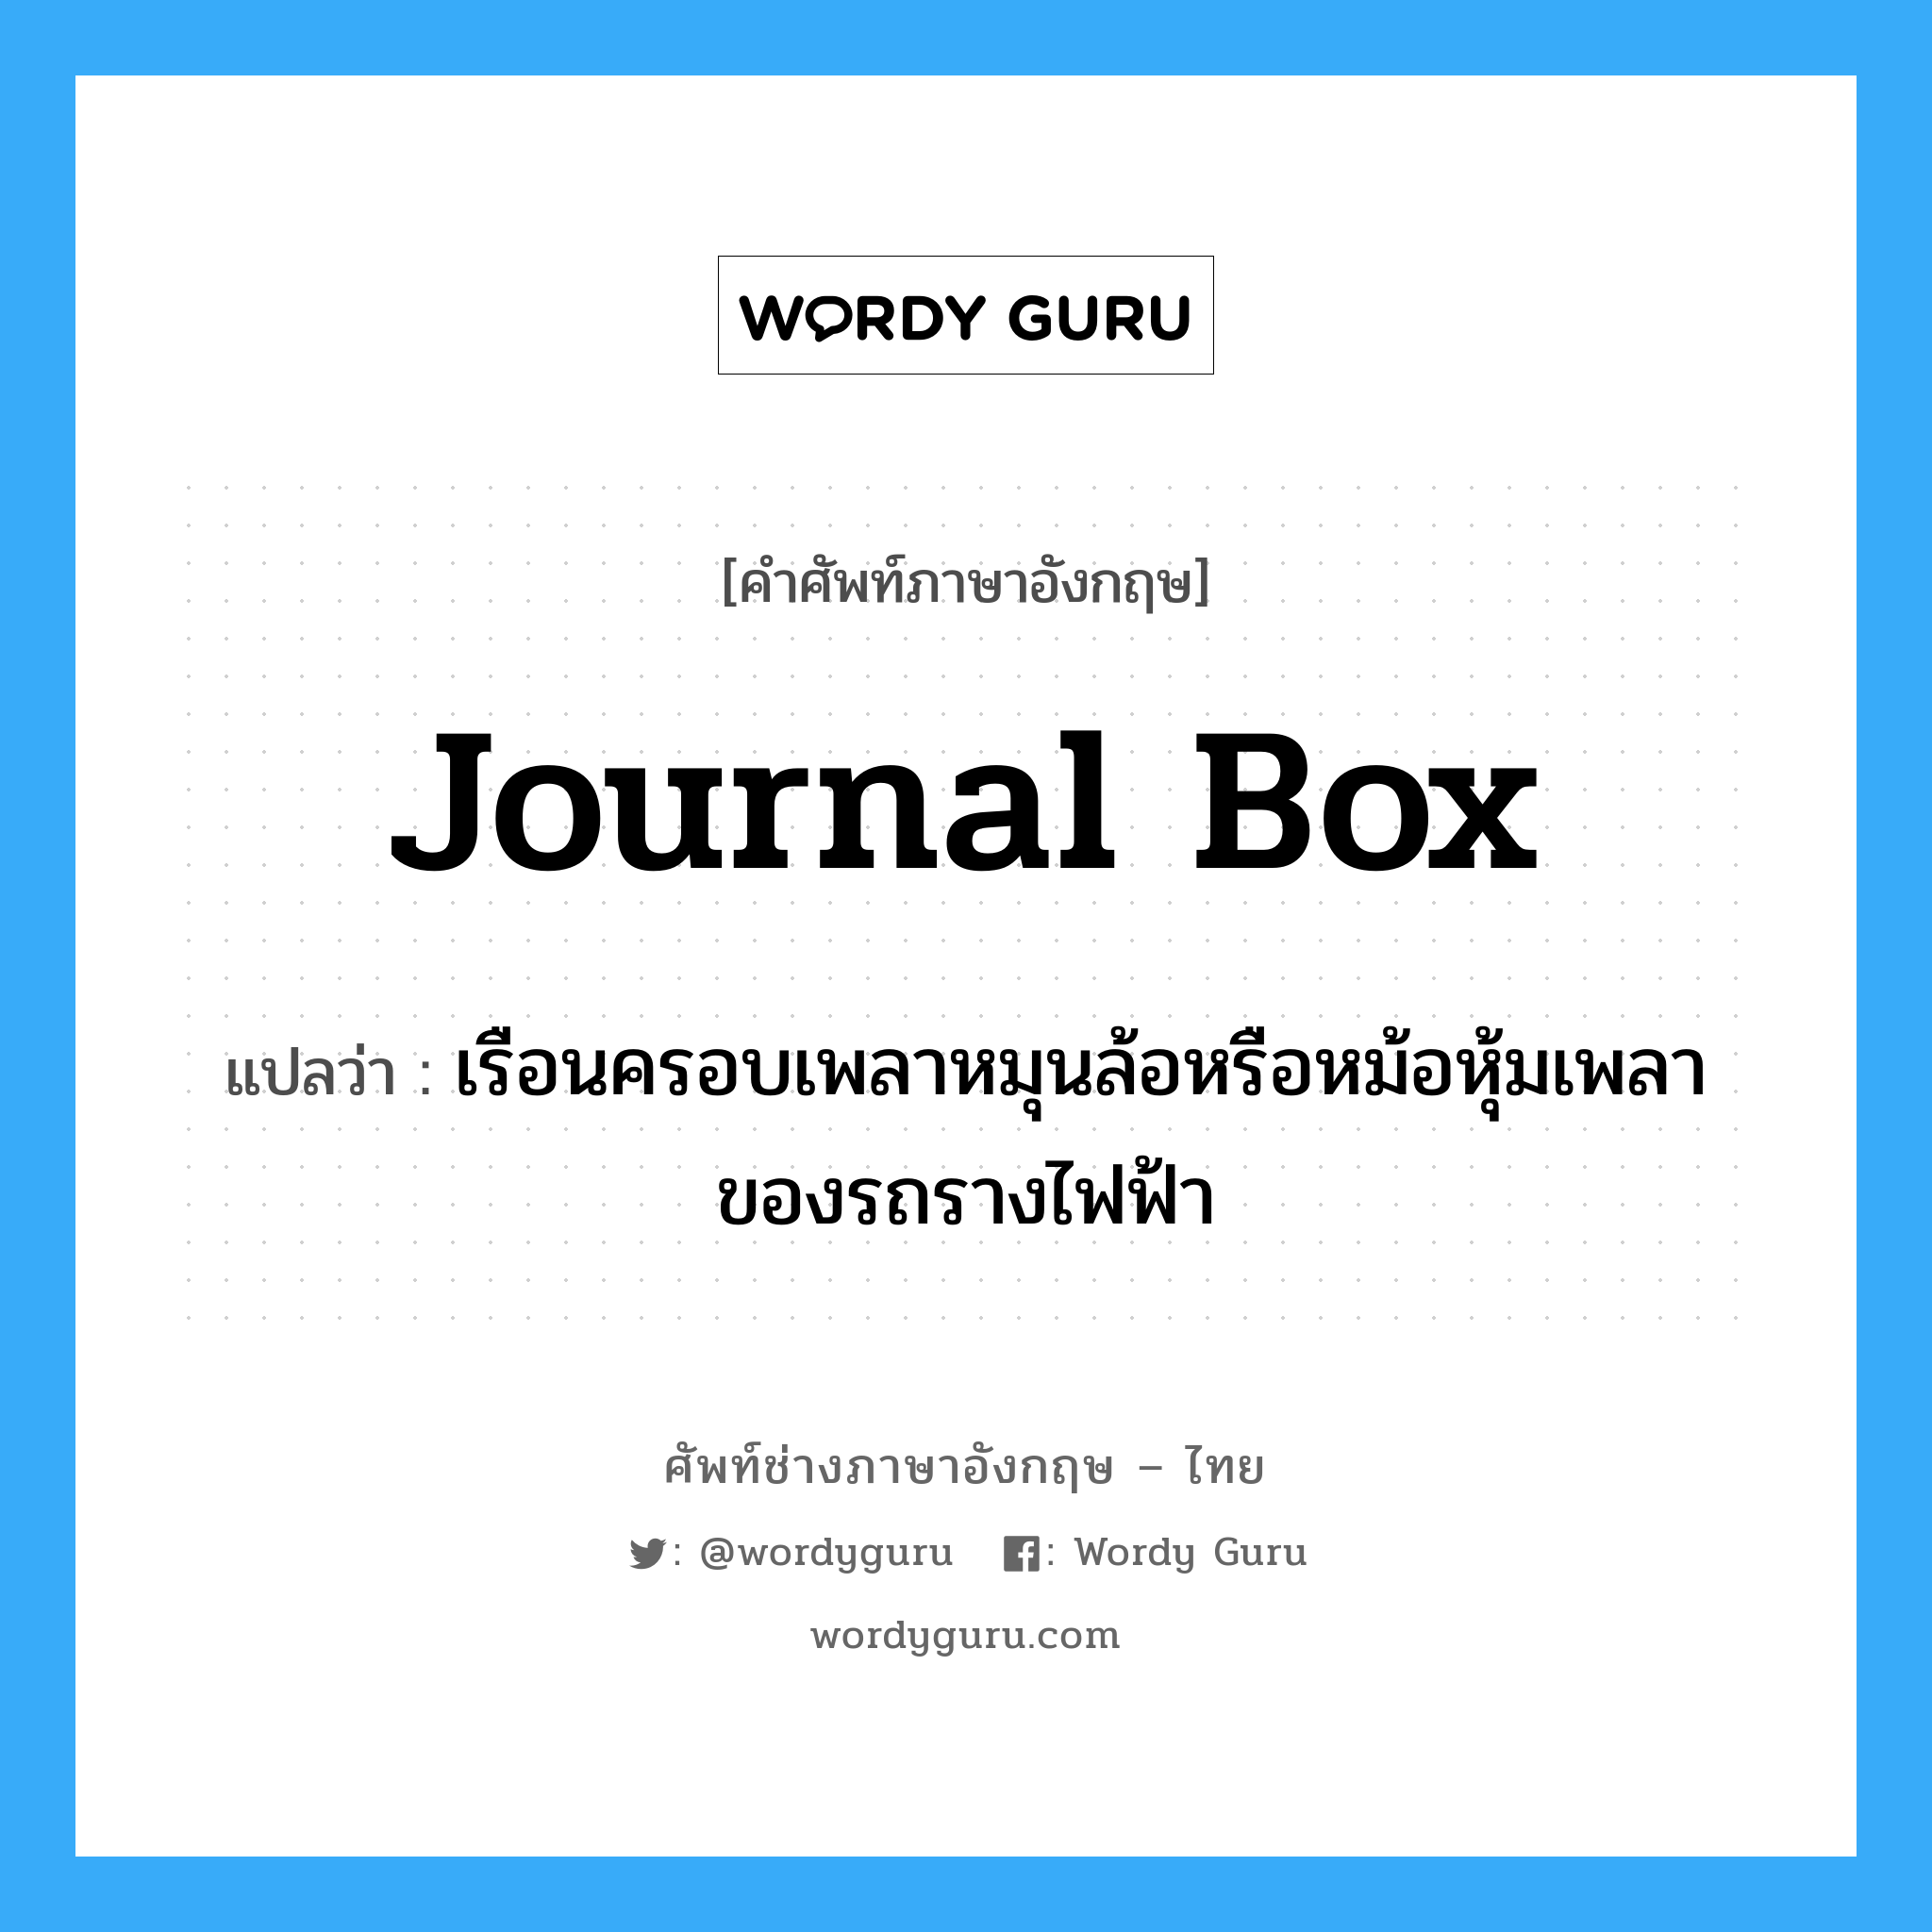 journal box แปลว่า?, คำศัพท์ช่างภาษาอังกฤษ - ไทย journal box คำศัพท์ภาษาอังกฤษ journal box แปลว่า เรือนครอบเพลาหมุนล้อหรือหม้อหุ้มเพลาของรถรางไฟฟ้า